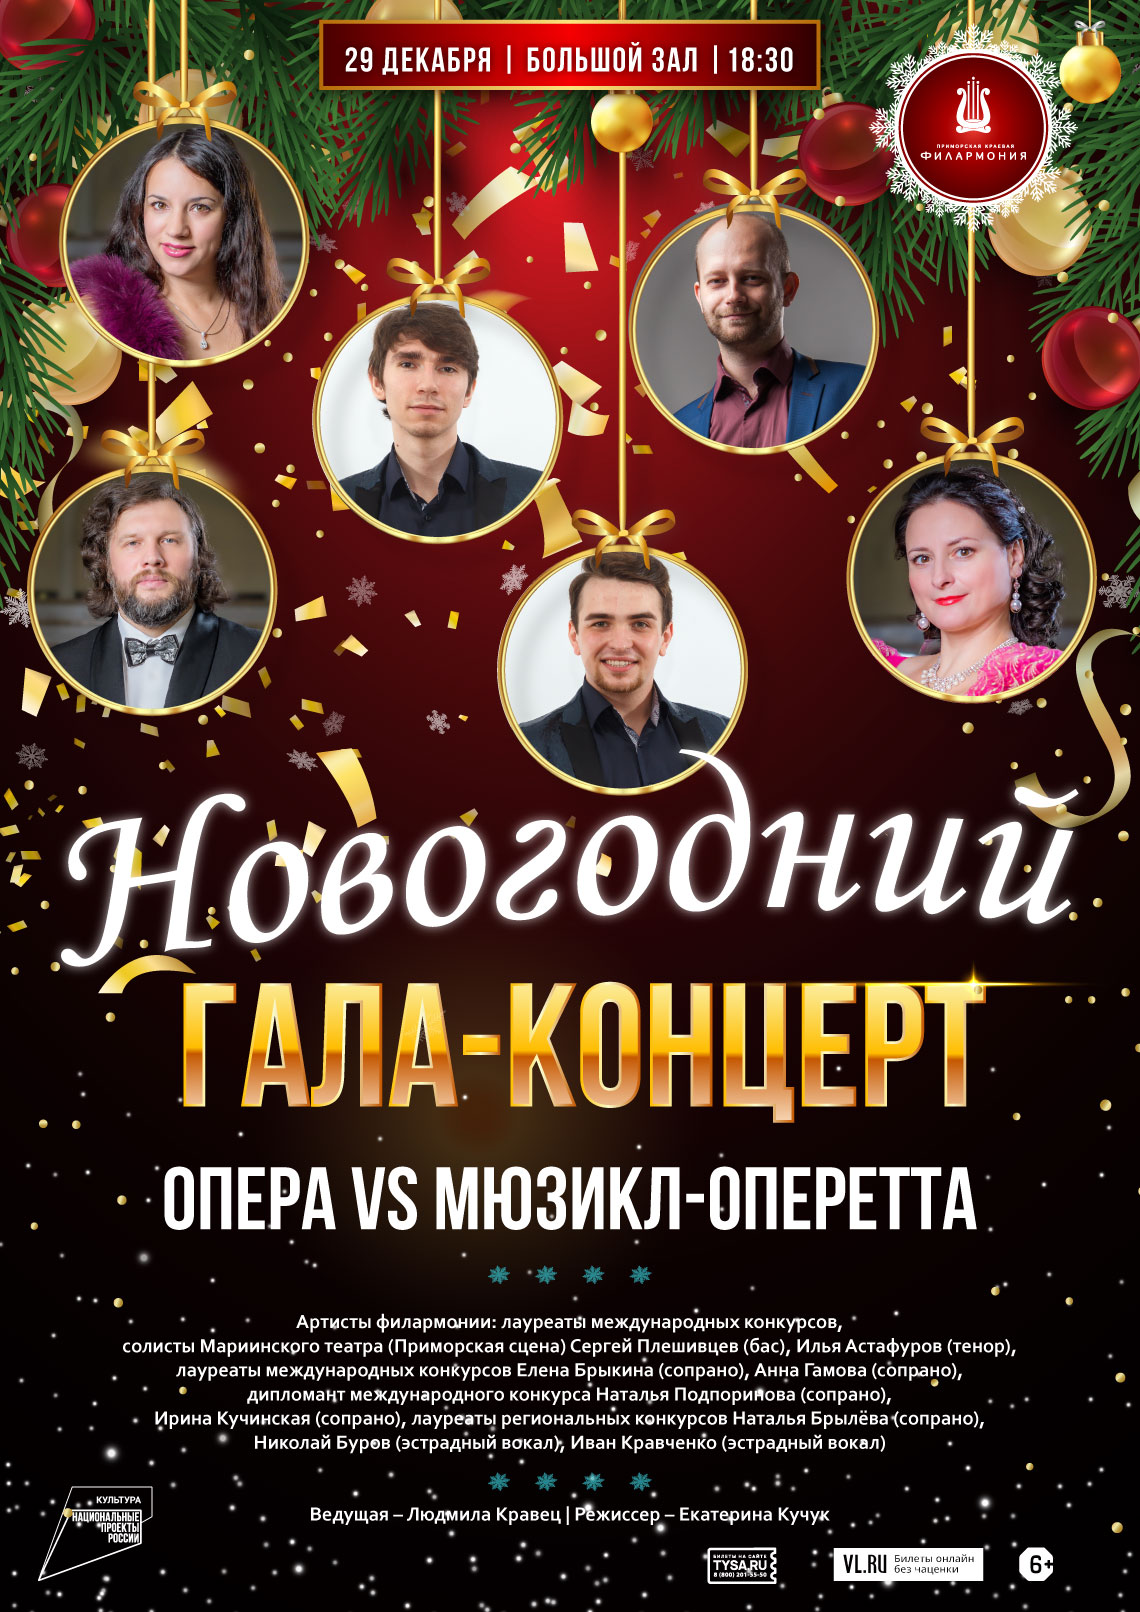 29 декабря Новогодний  Гала - концерт  "ОПЕРА VS МЮЗИКЛ-ОПЕРЕТТА"